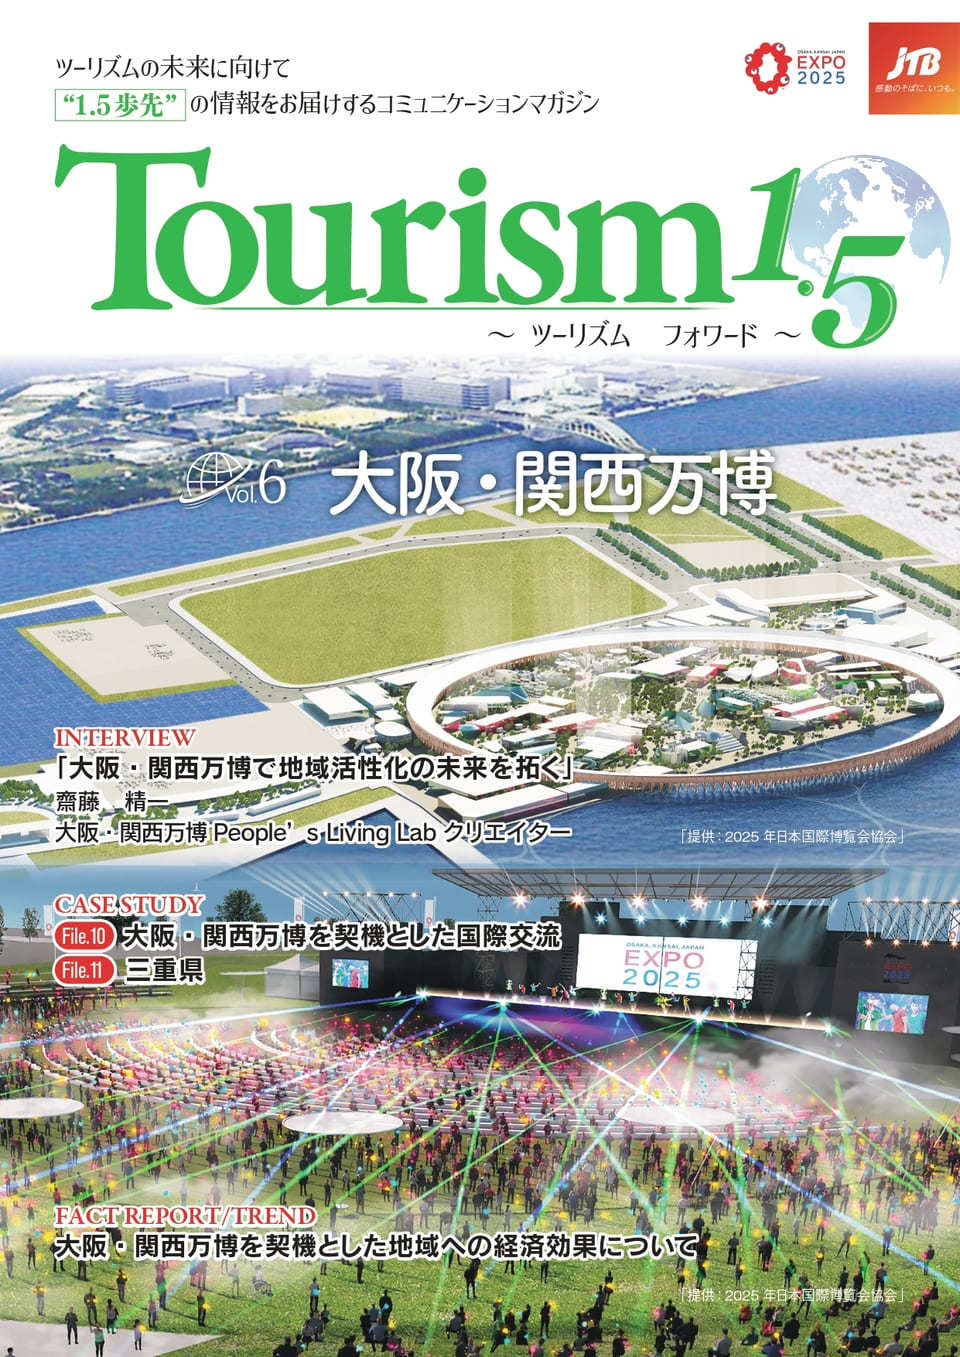 Tourism1.5 ～ツーリズムフォワード～（Vol.6） 大阪・関西万博